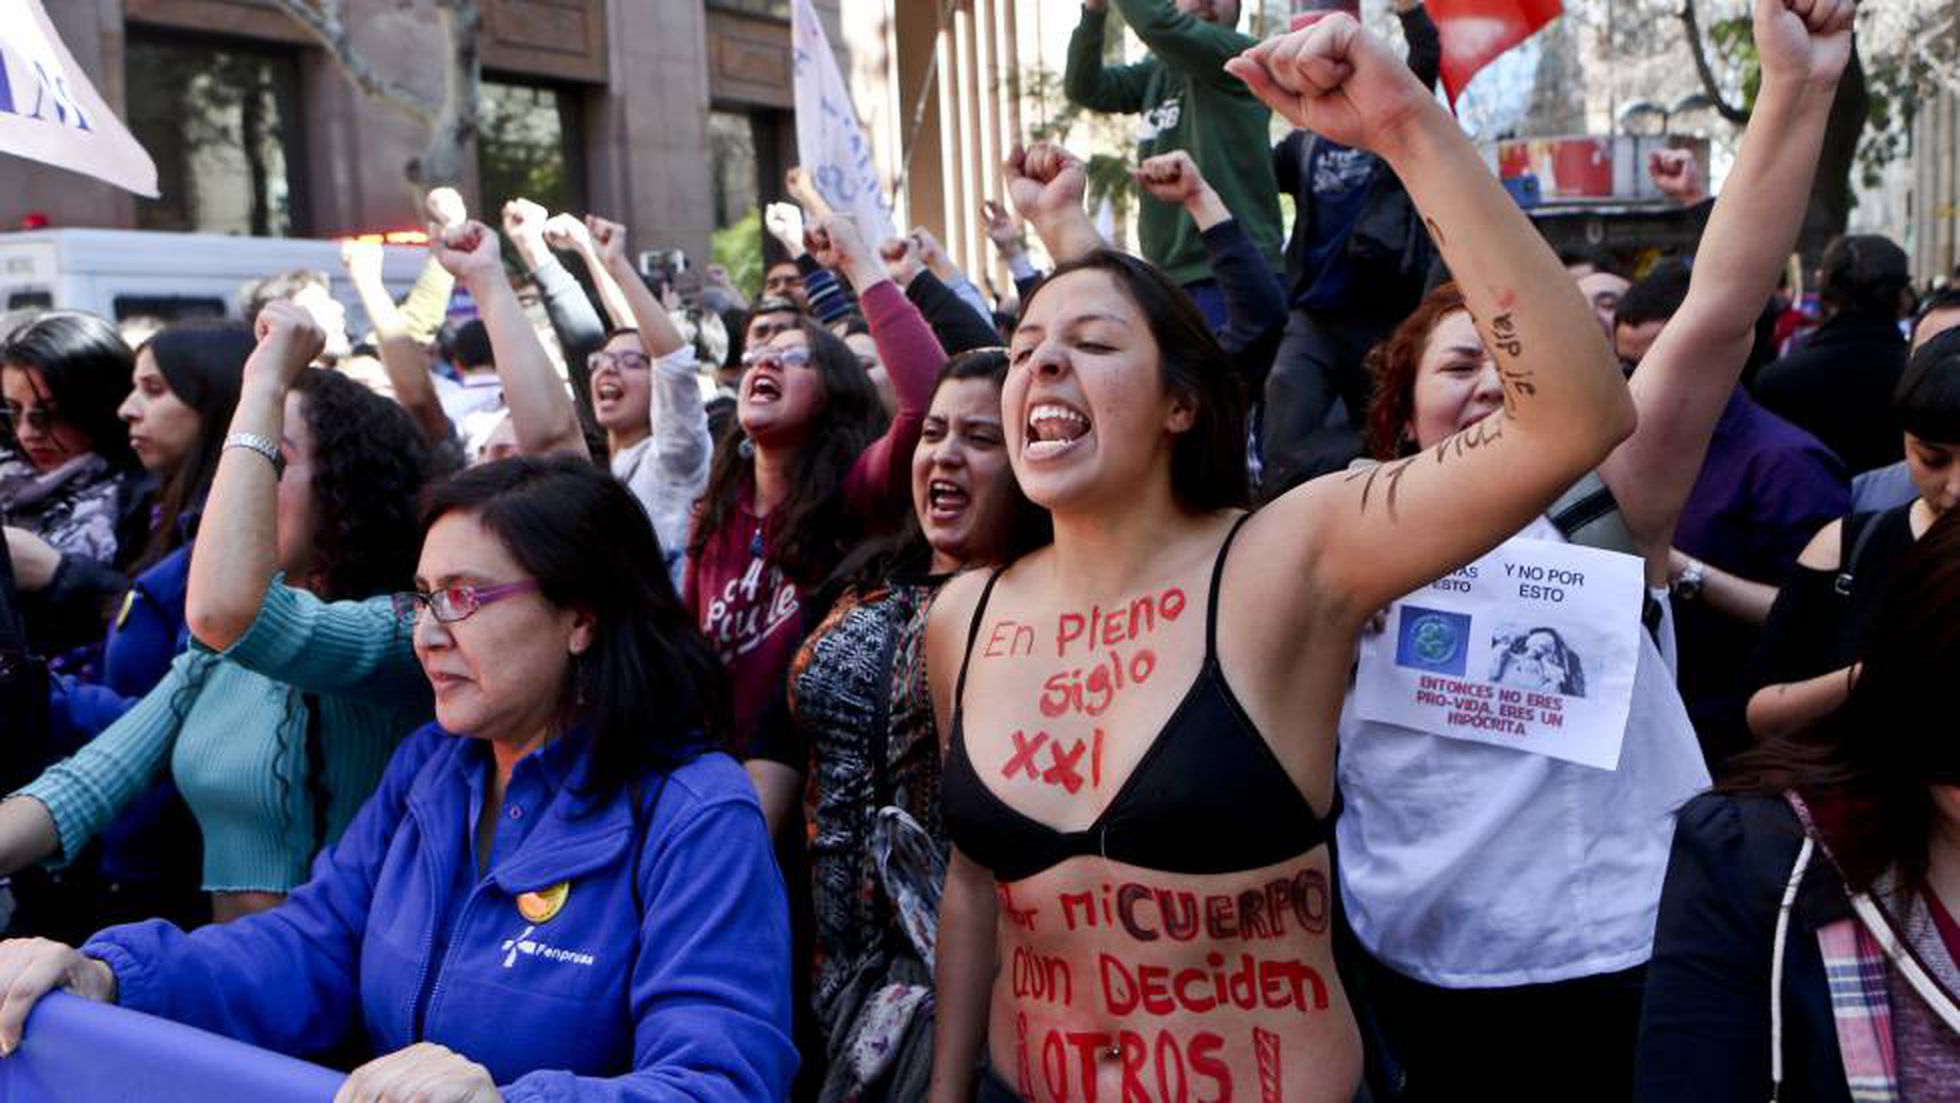 Chile quiere legalizar el aborto “sin restricciones”, dice activista provida